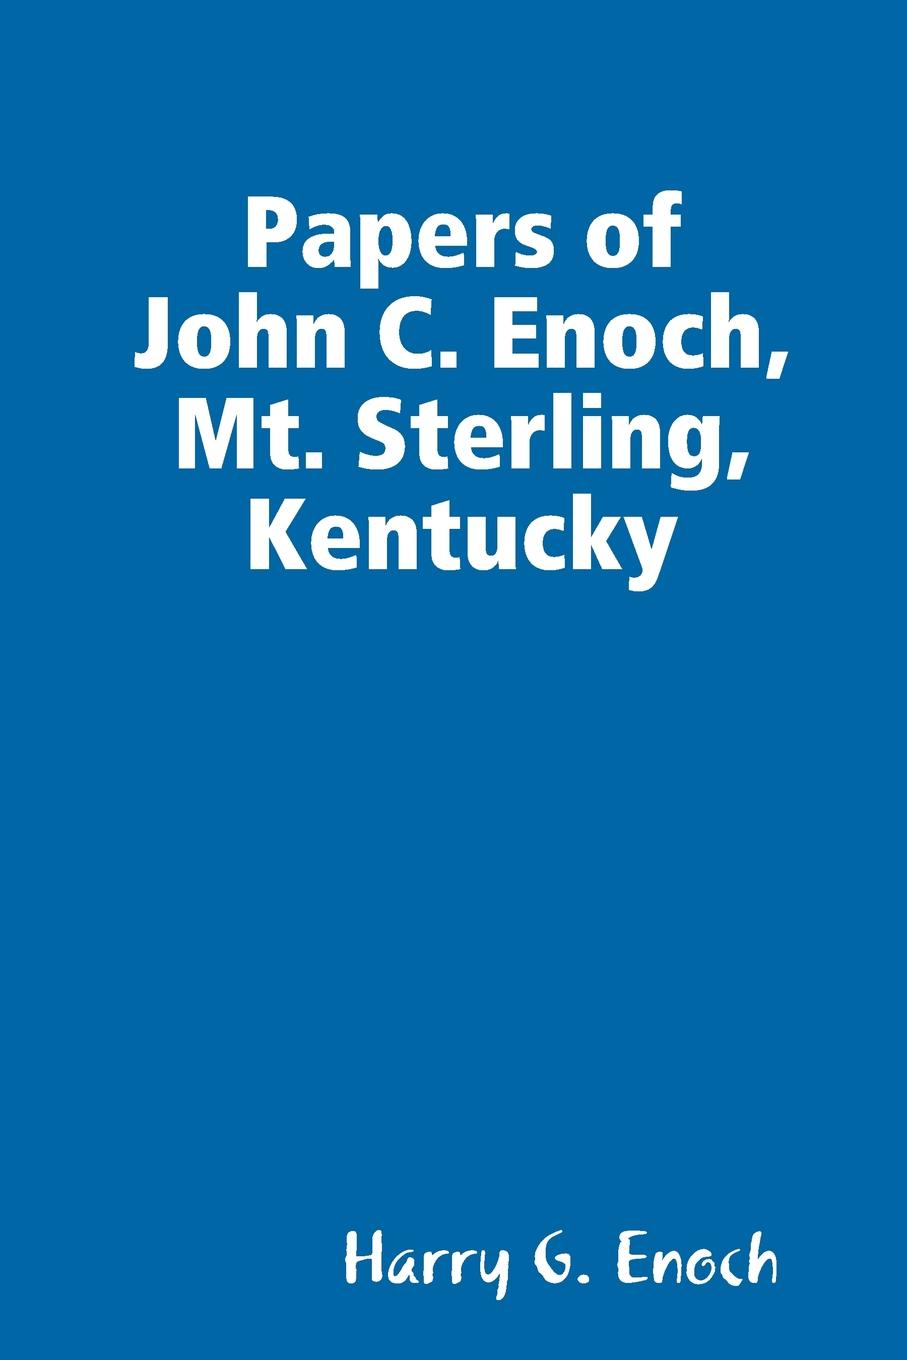 фото Papers of John C. Enoch, Mt. Sterling, Kentucky